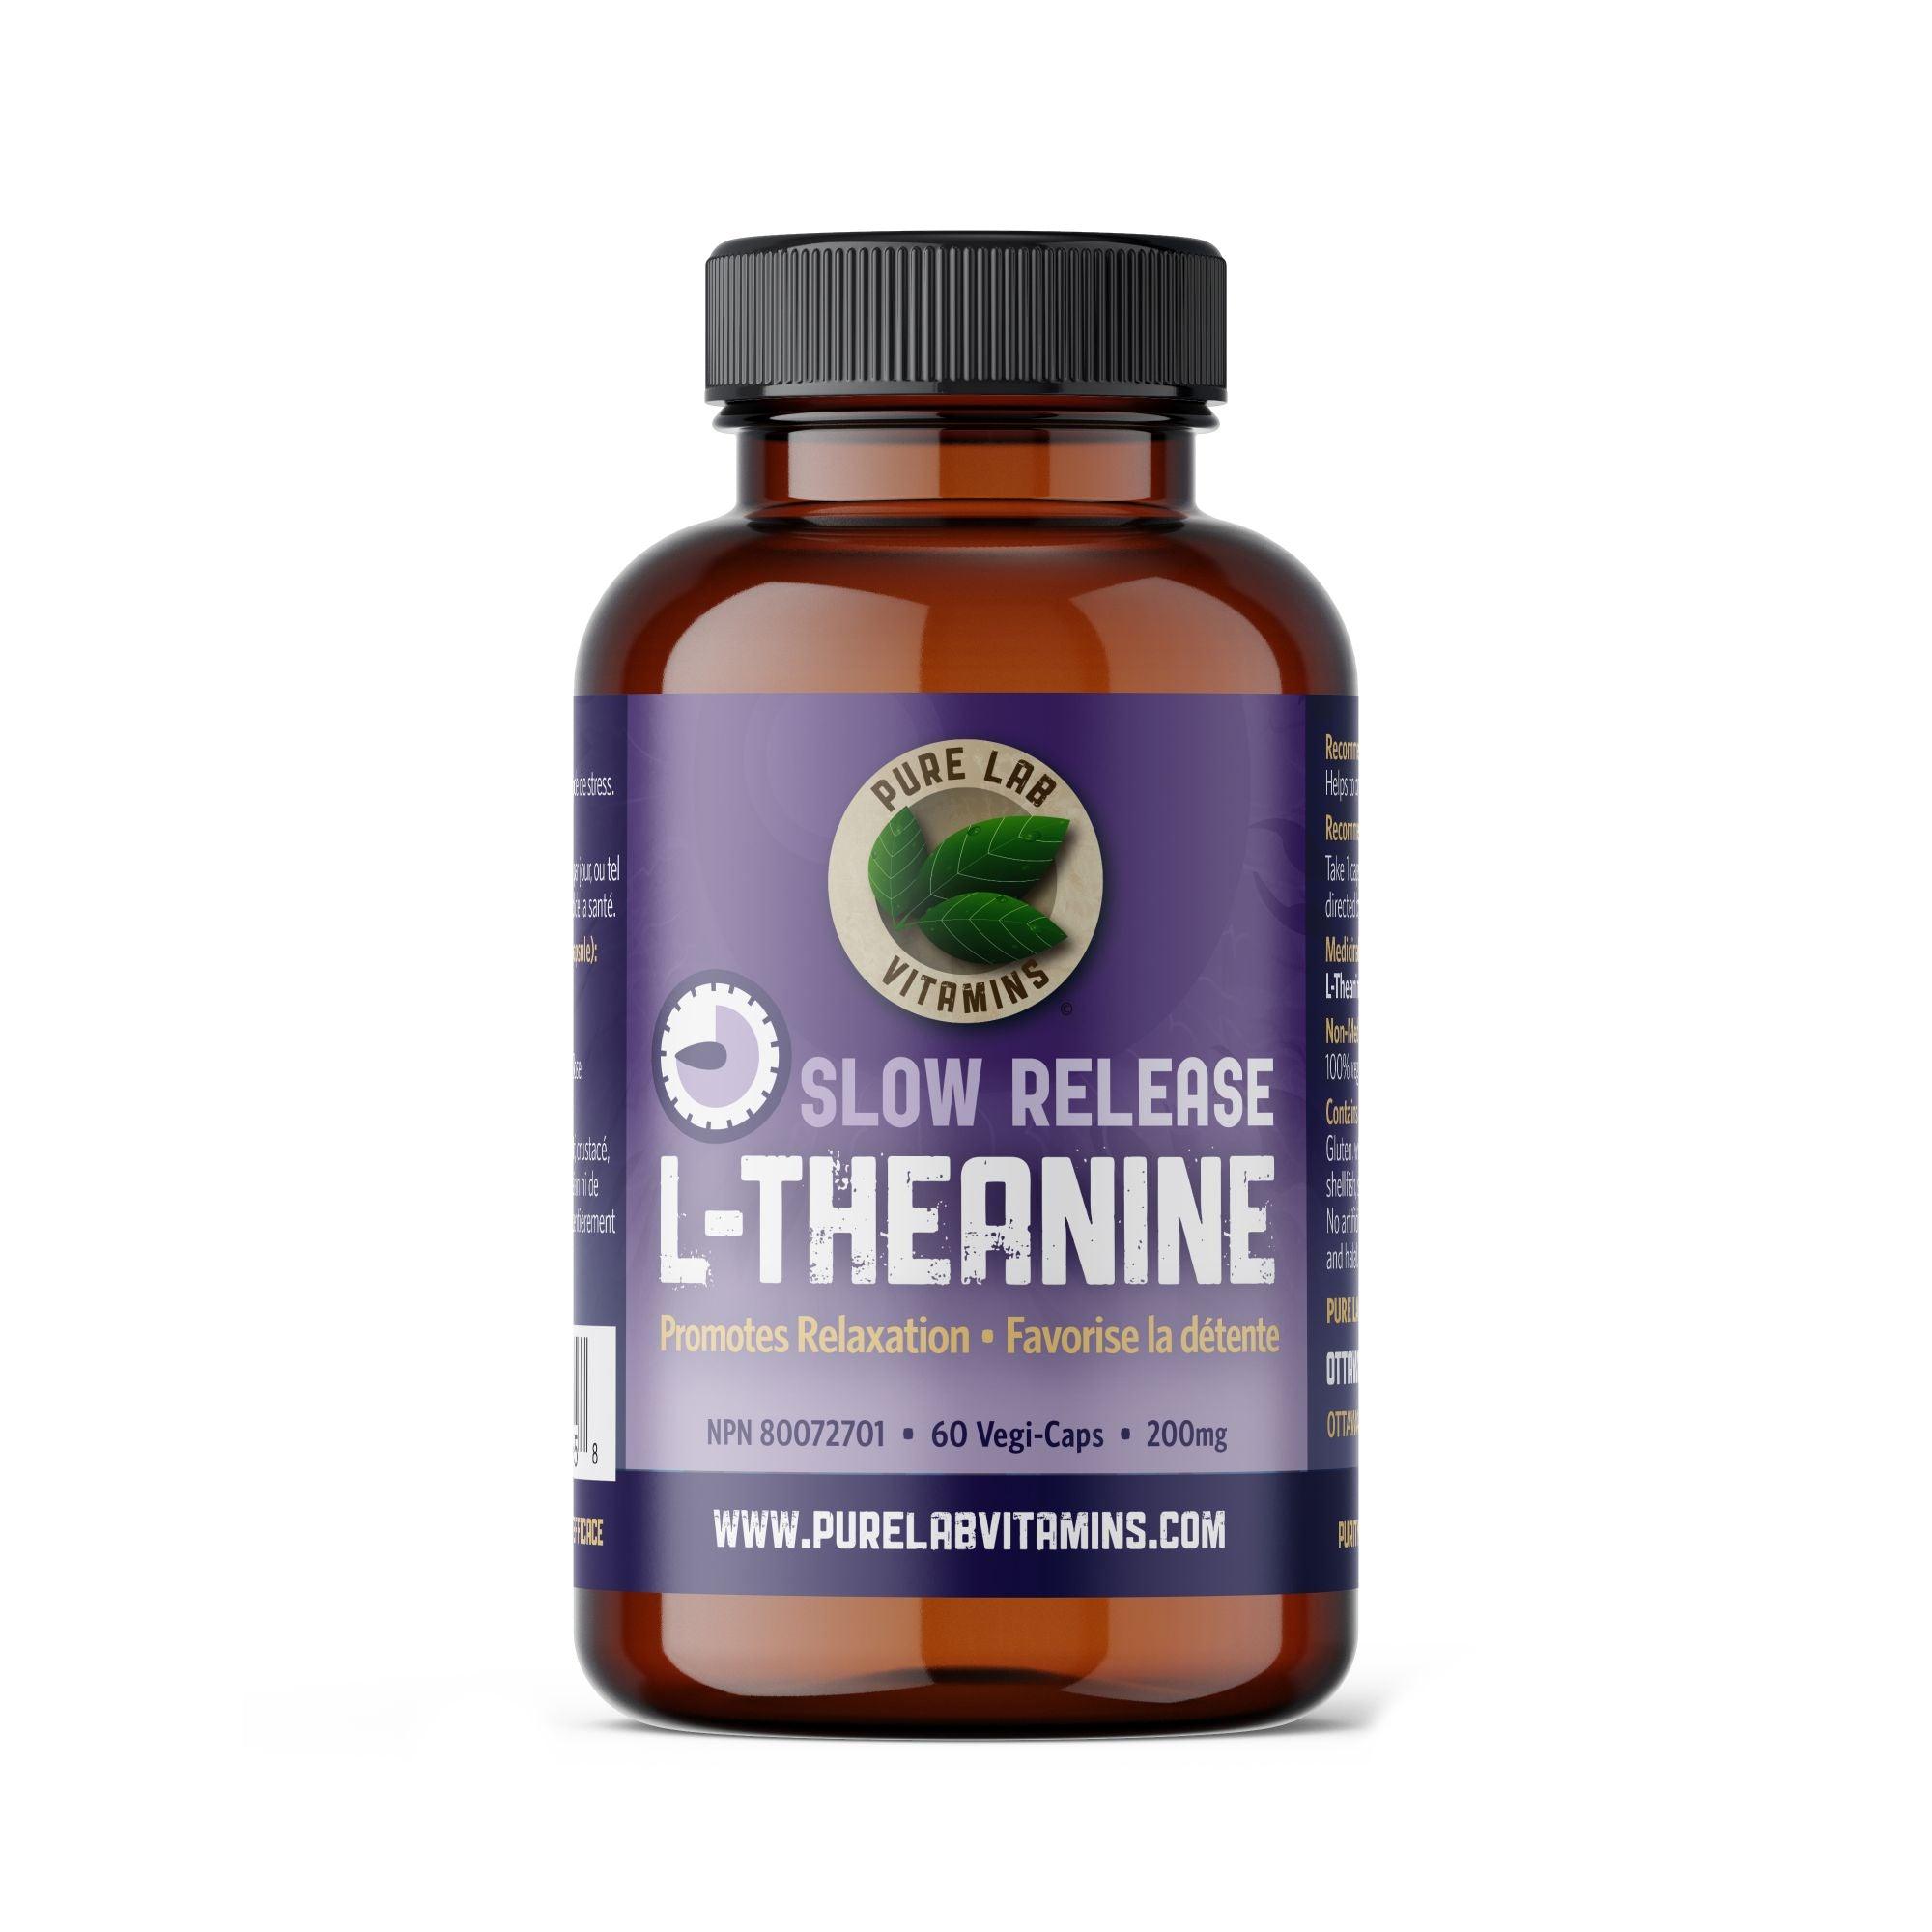 Pure Lab Vitamins L-Theanine SR 200mg